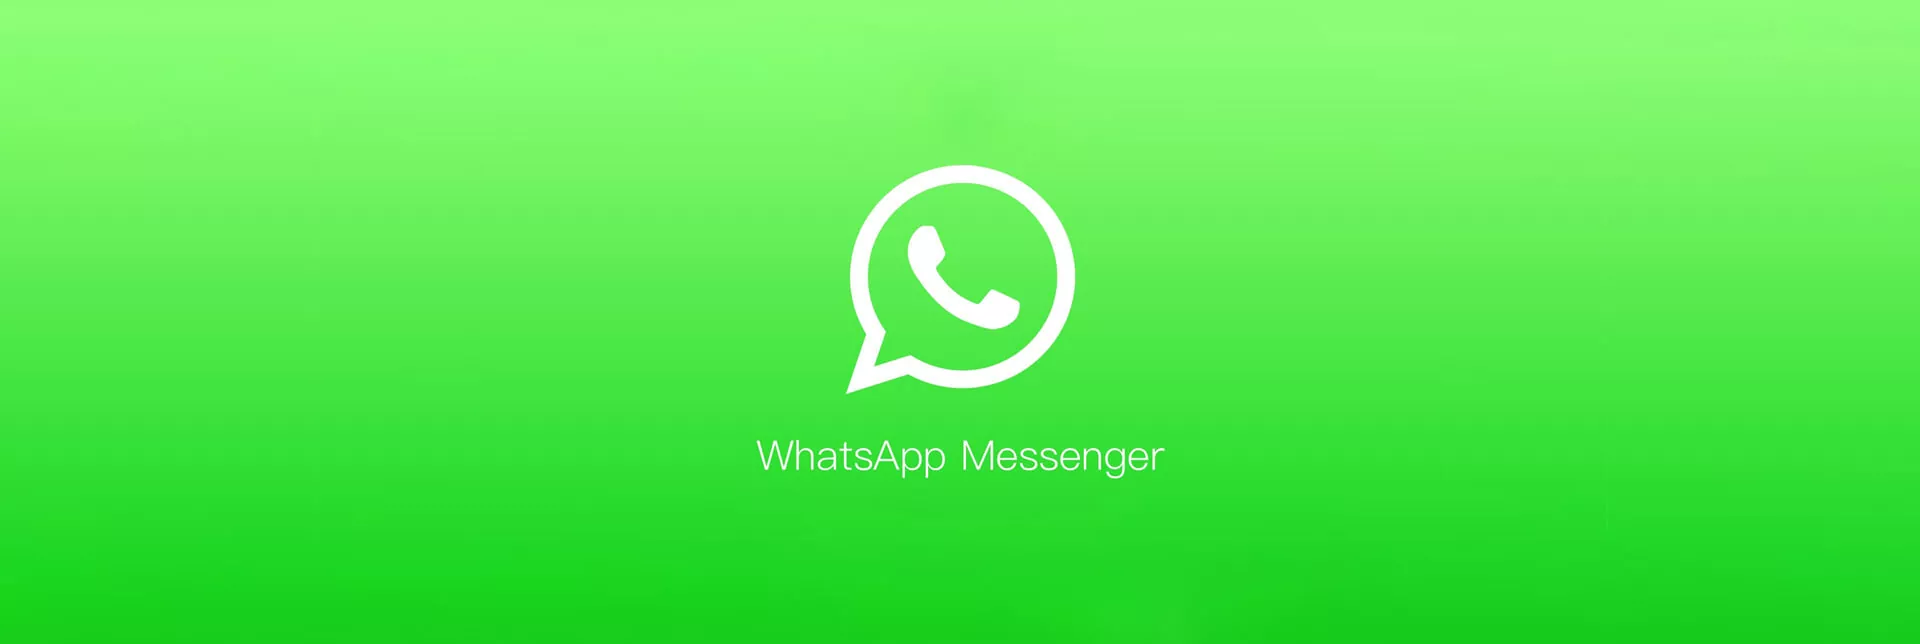 SAC 2.0: Saiba como o WhatsApp e o Messenger pode aumentar suas vendas